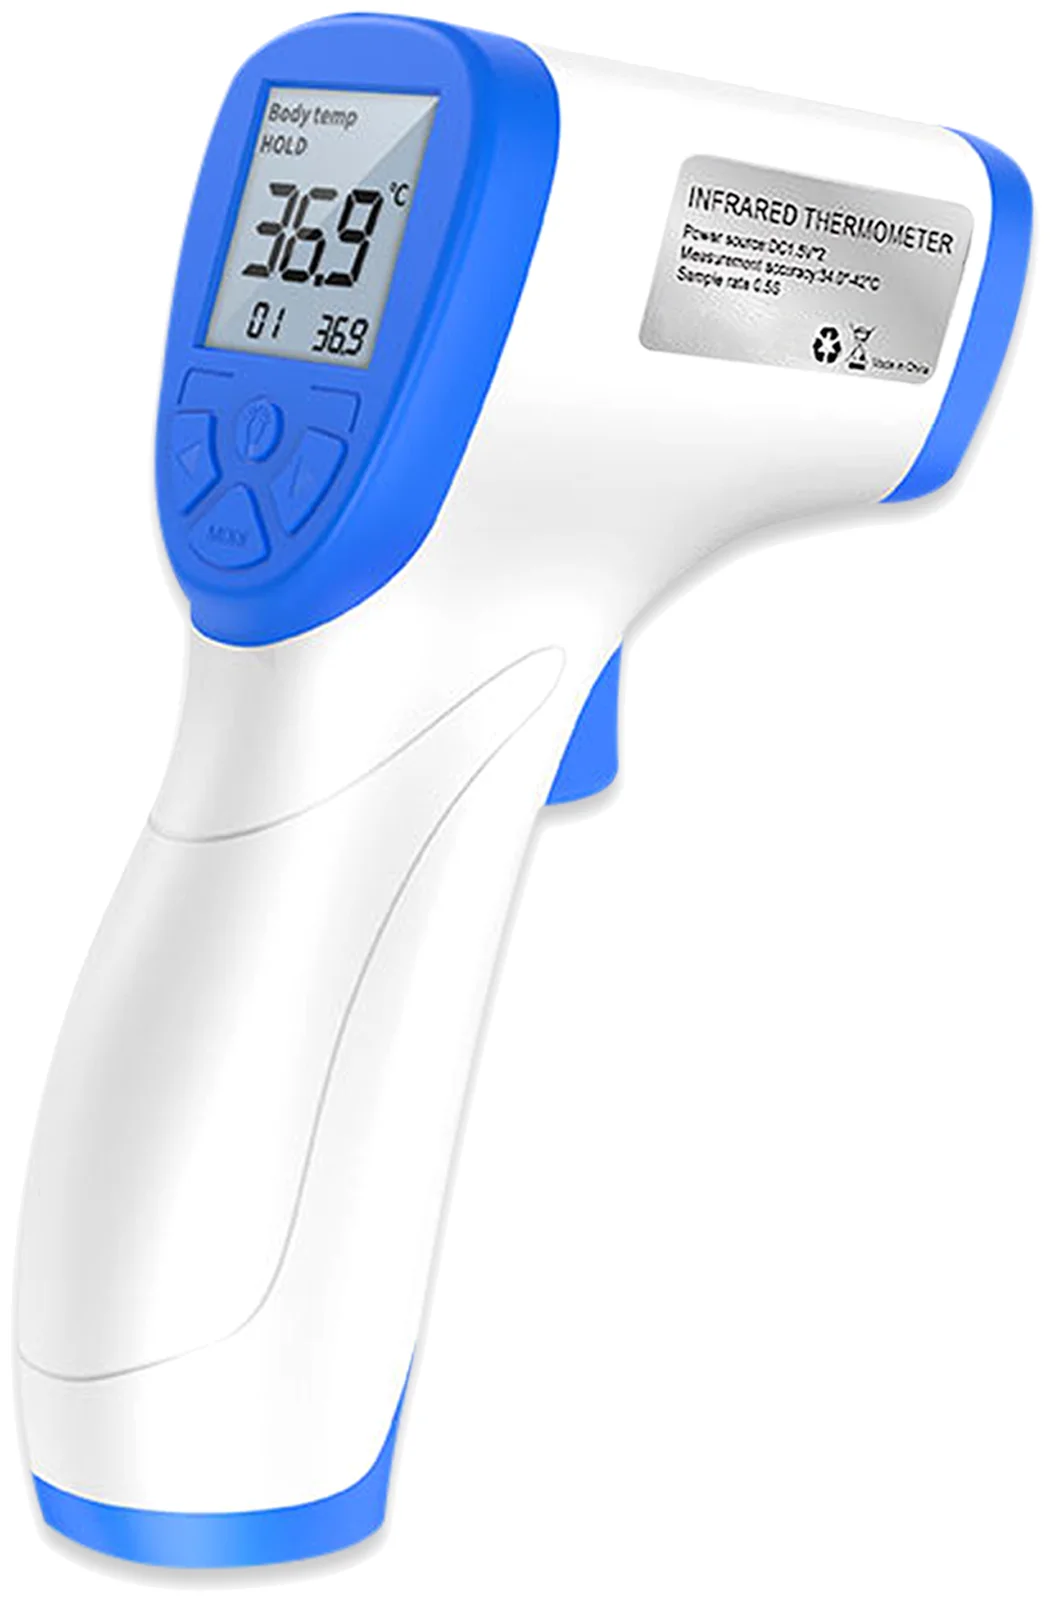 Hoco KY-111 - тип термометра: инфракрасный